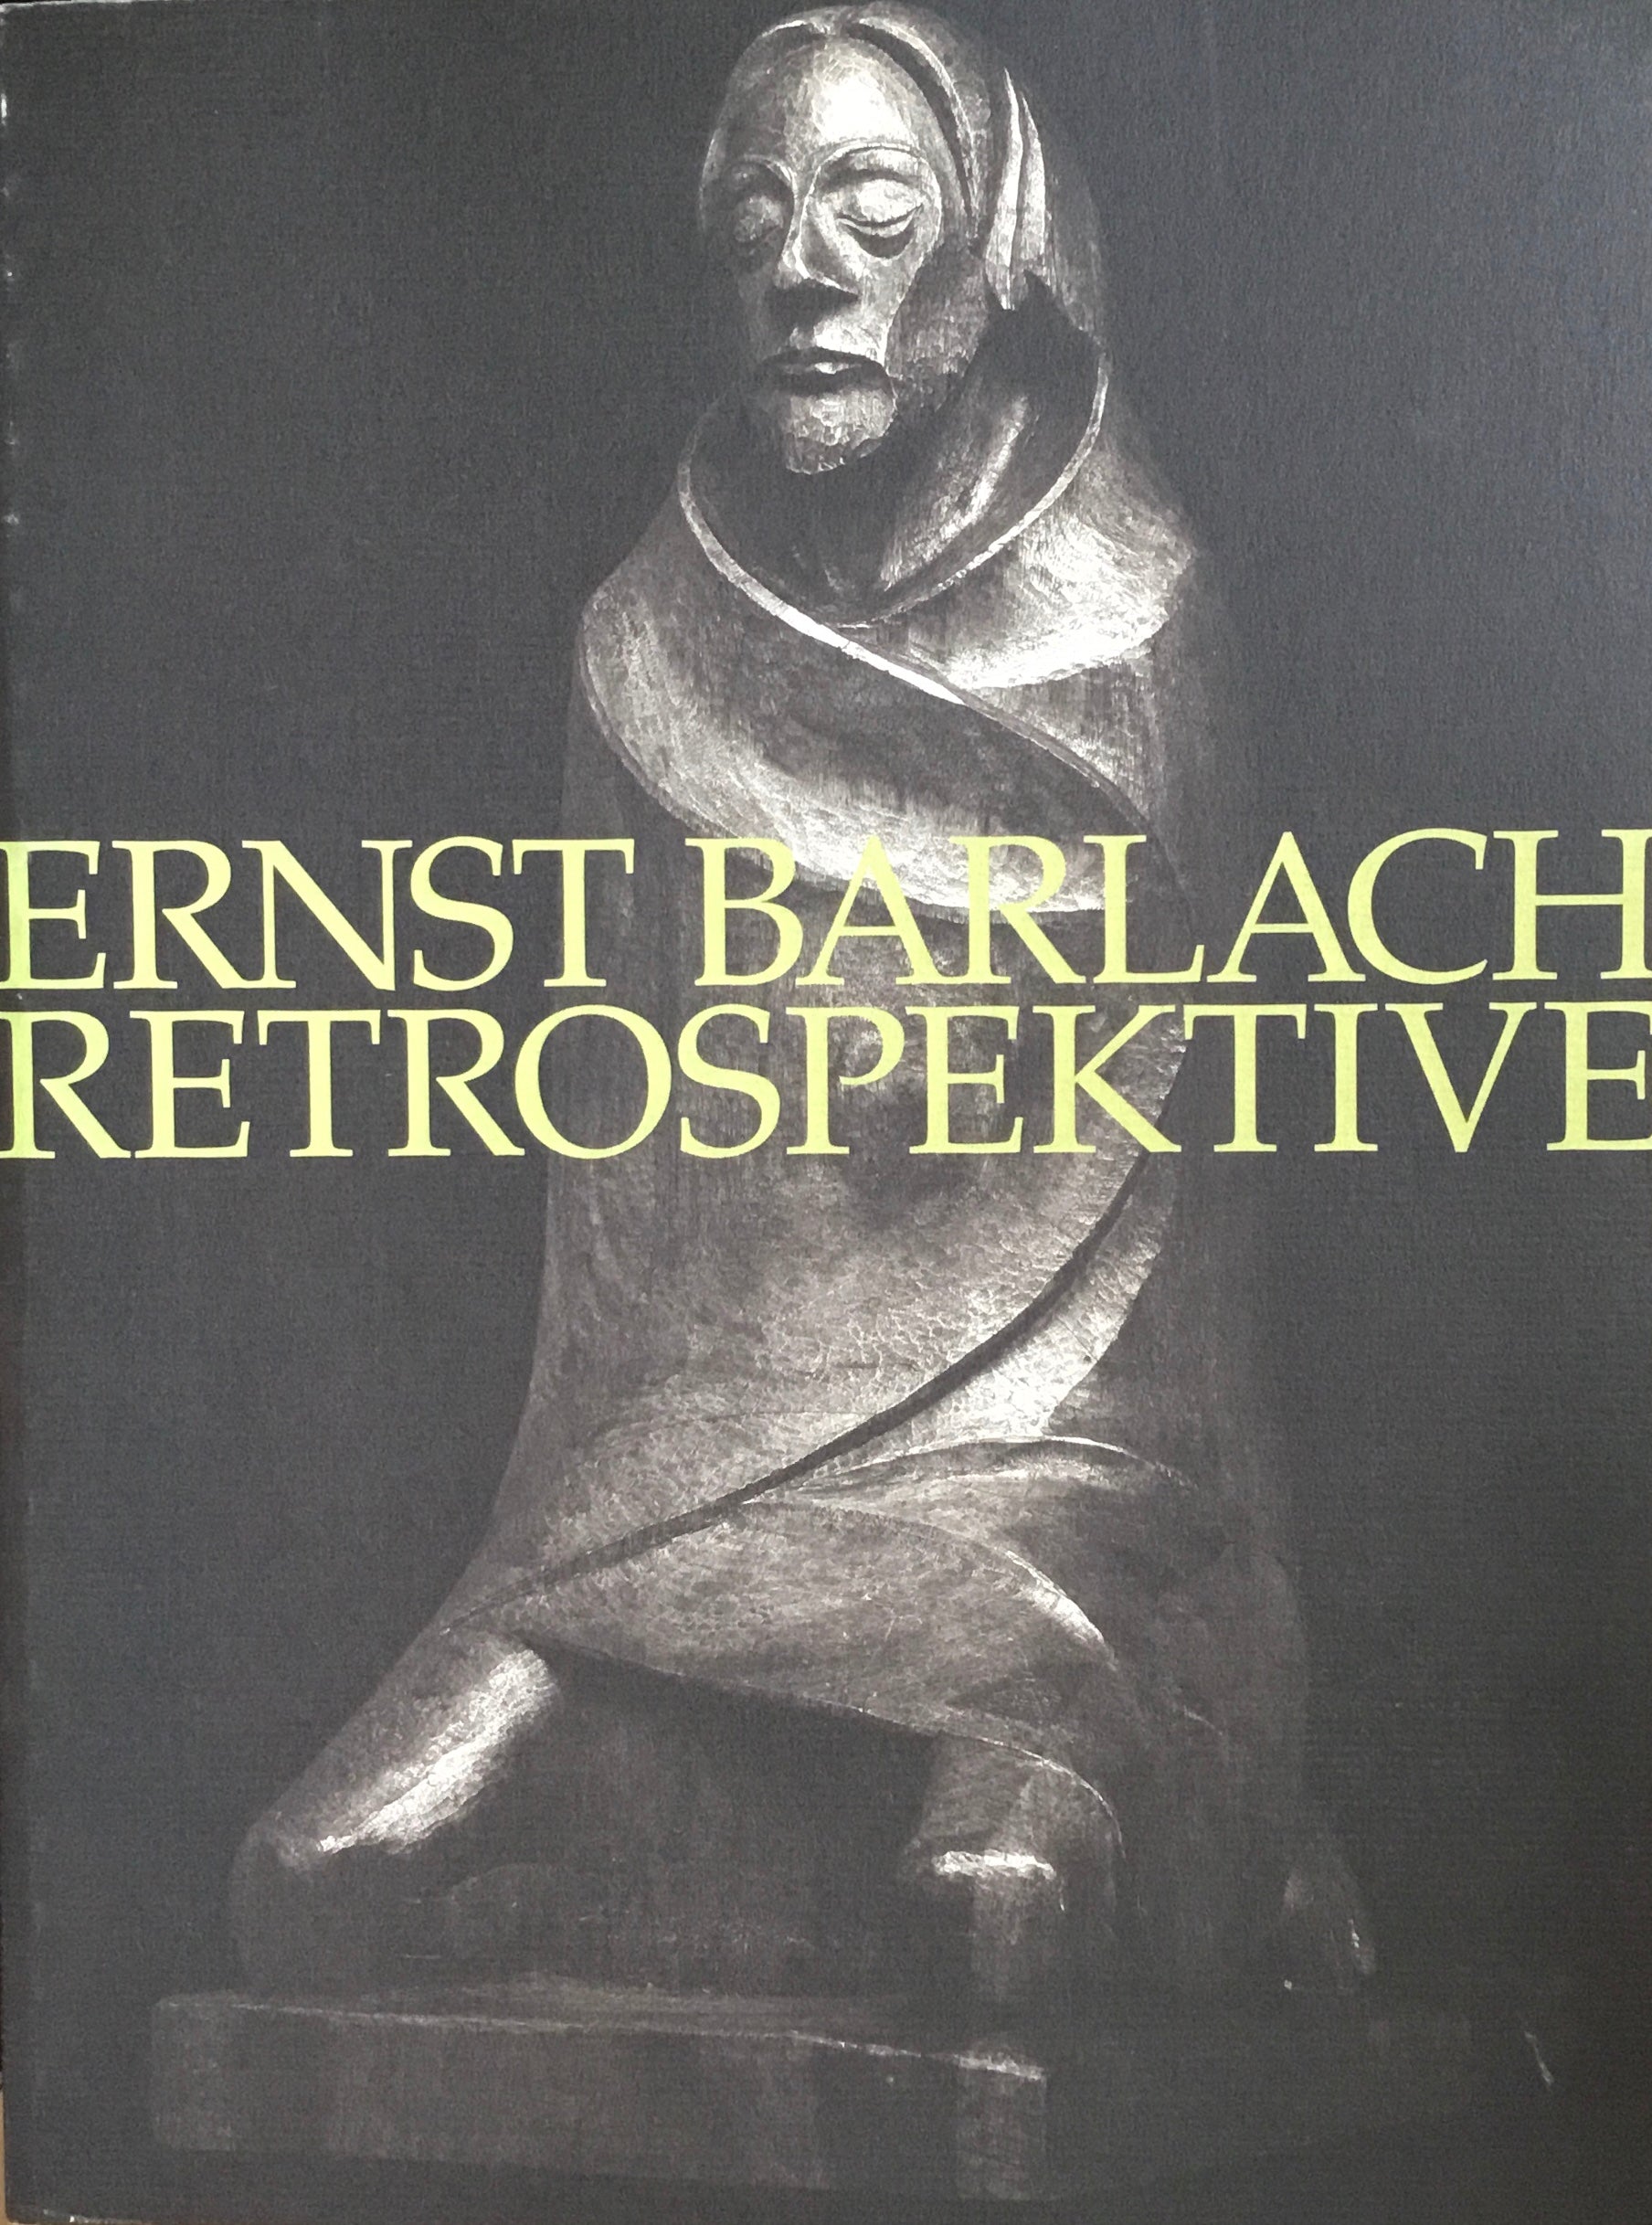 エルンスト・バルラハ ドイツ表現主義の彫刻家 – smokebooks shop